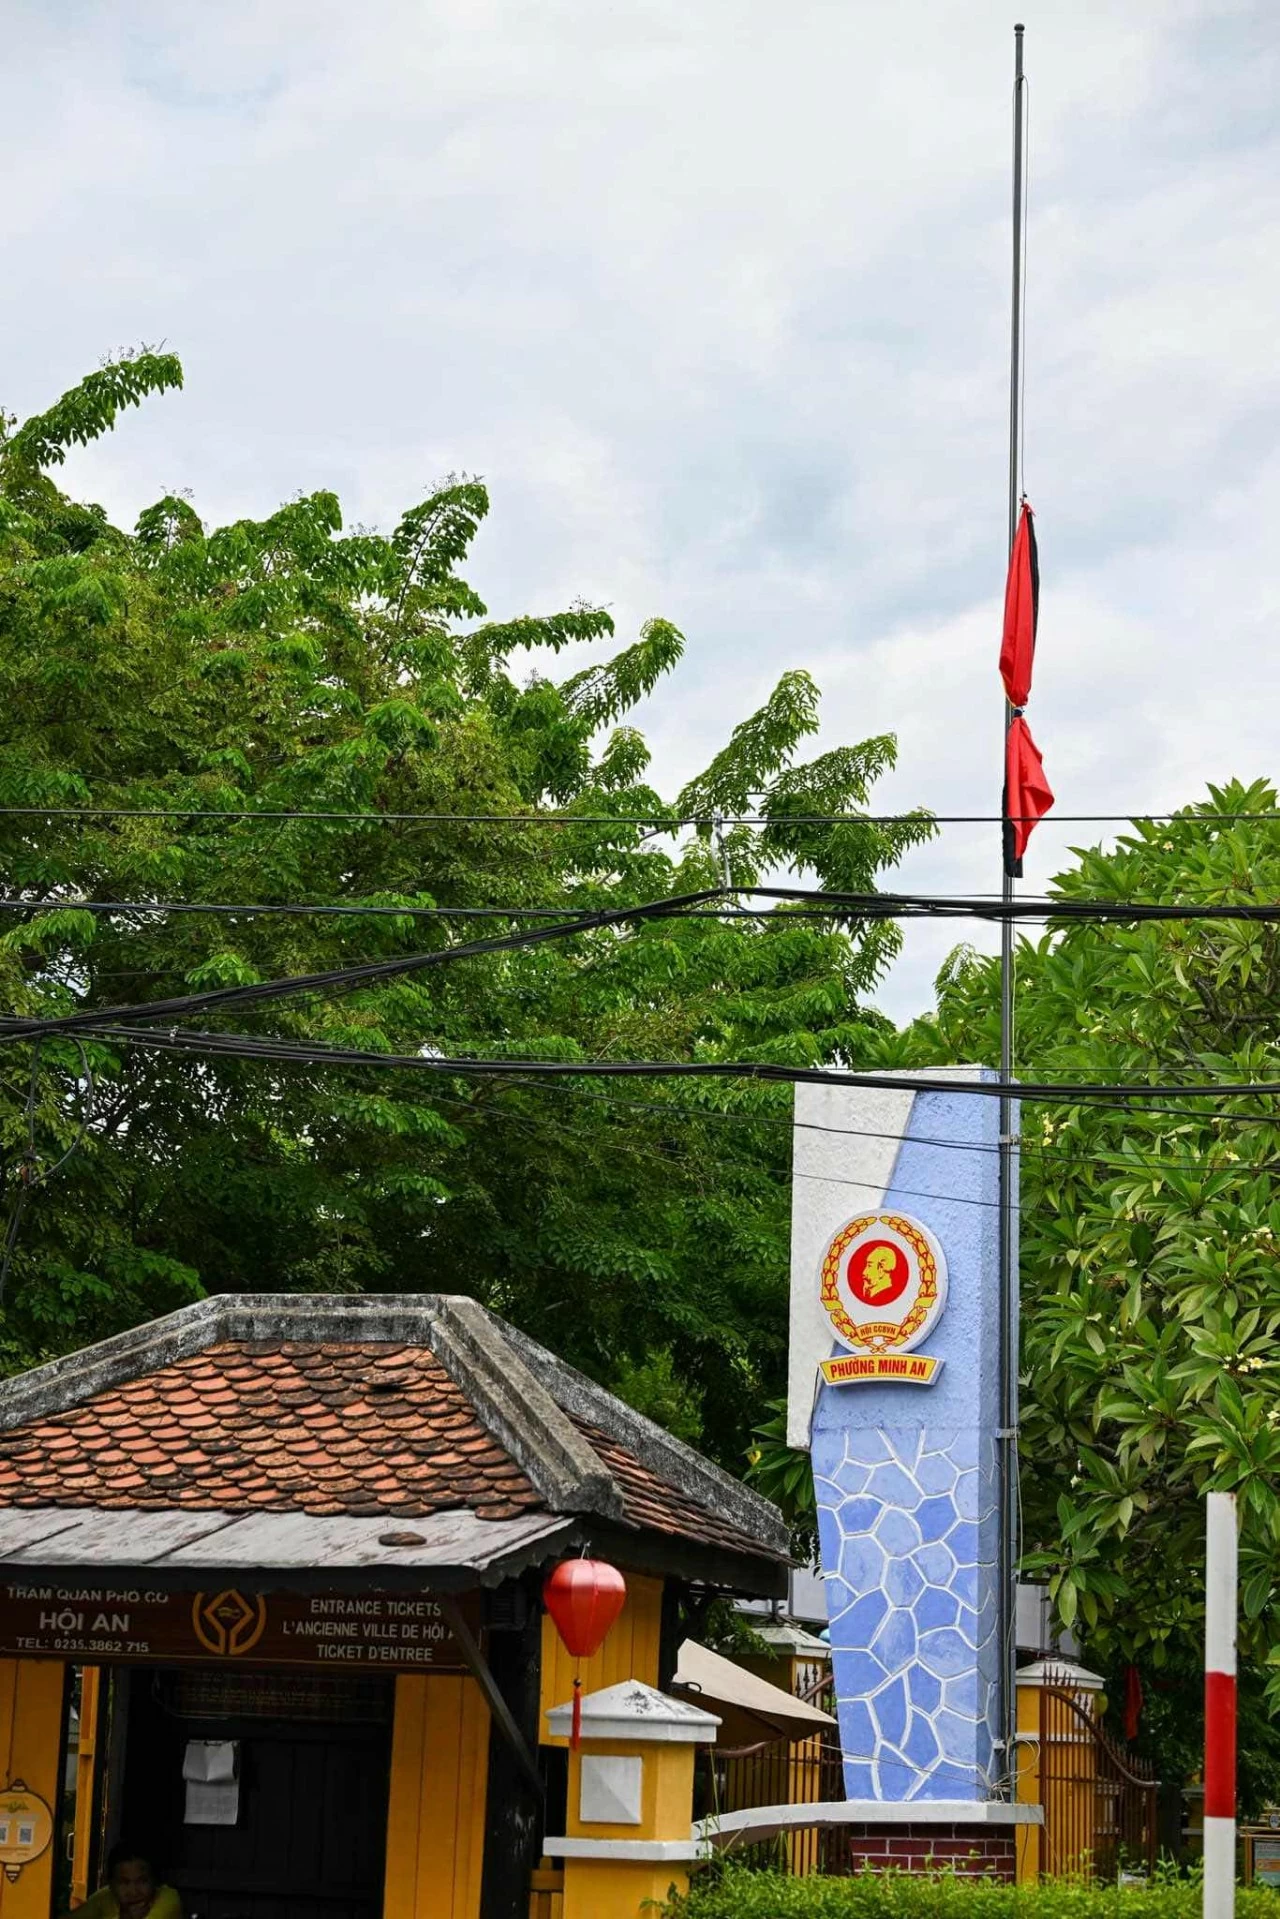 Hình ảnh cờ rủ xuất hiện nhiều nơi trước Quốc tang Tổng Bí thư Nguyễn Phú Trọng